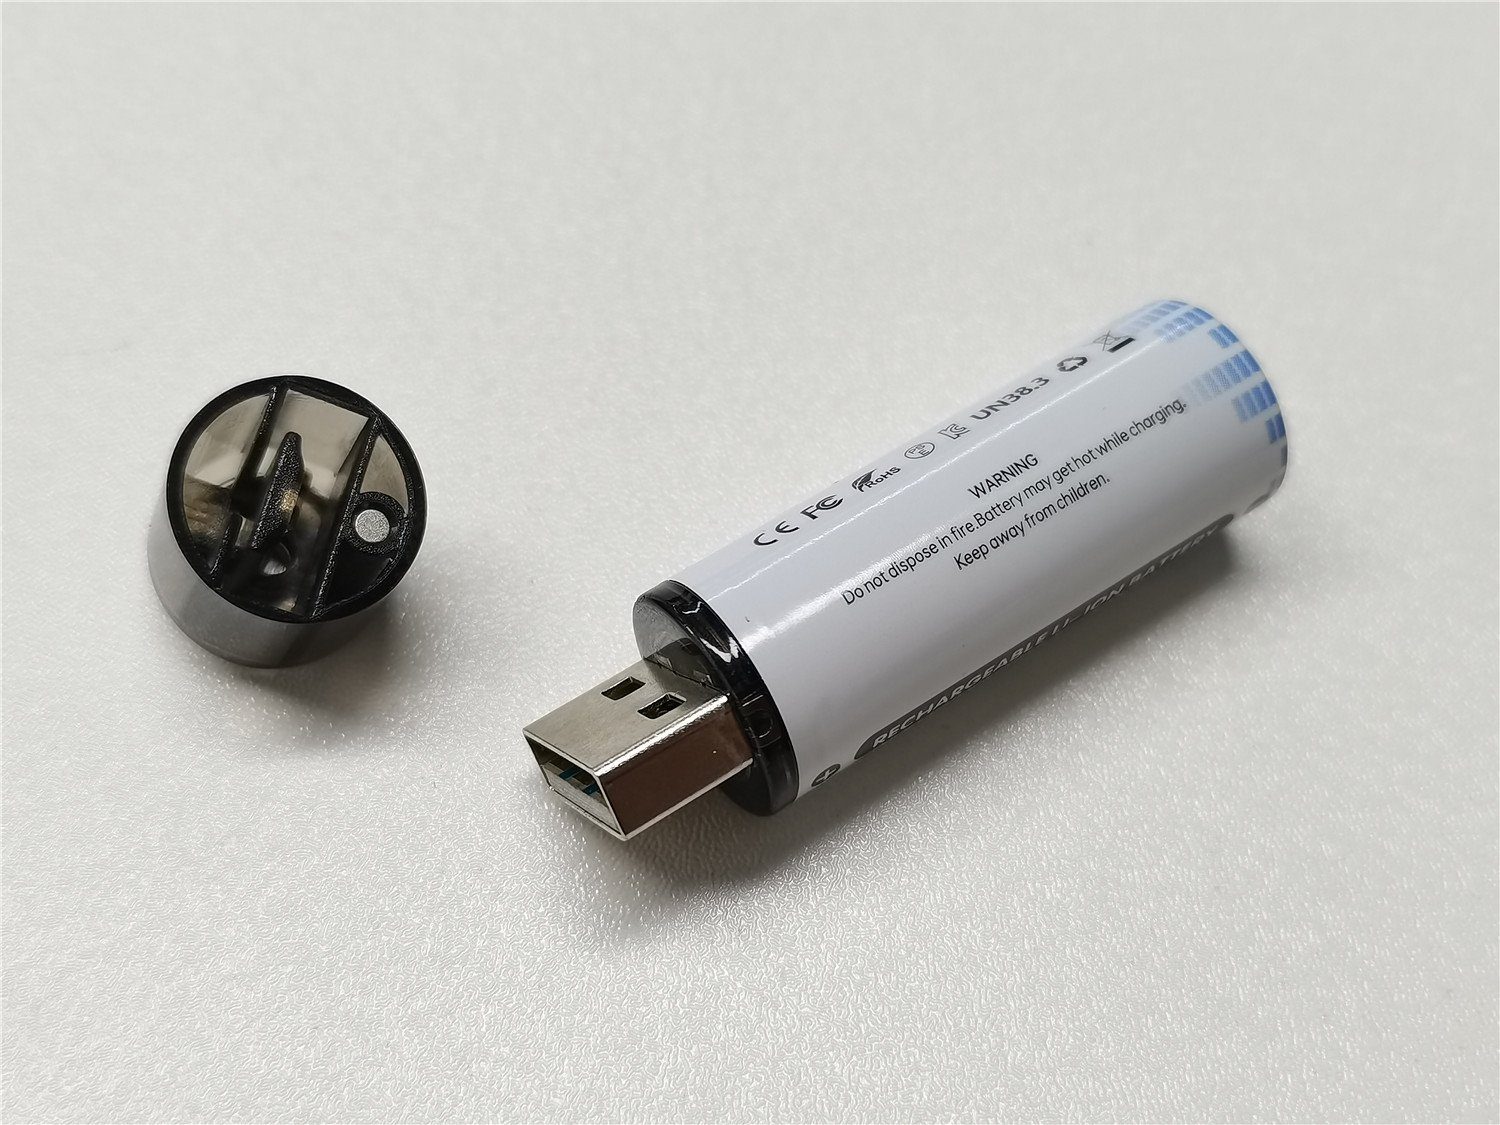 Philosofia 2X AA Li-Ionen Mignon Akku 3600mWh 1.5V mit eingebautem USB in OVP Akku-Set